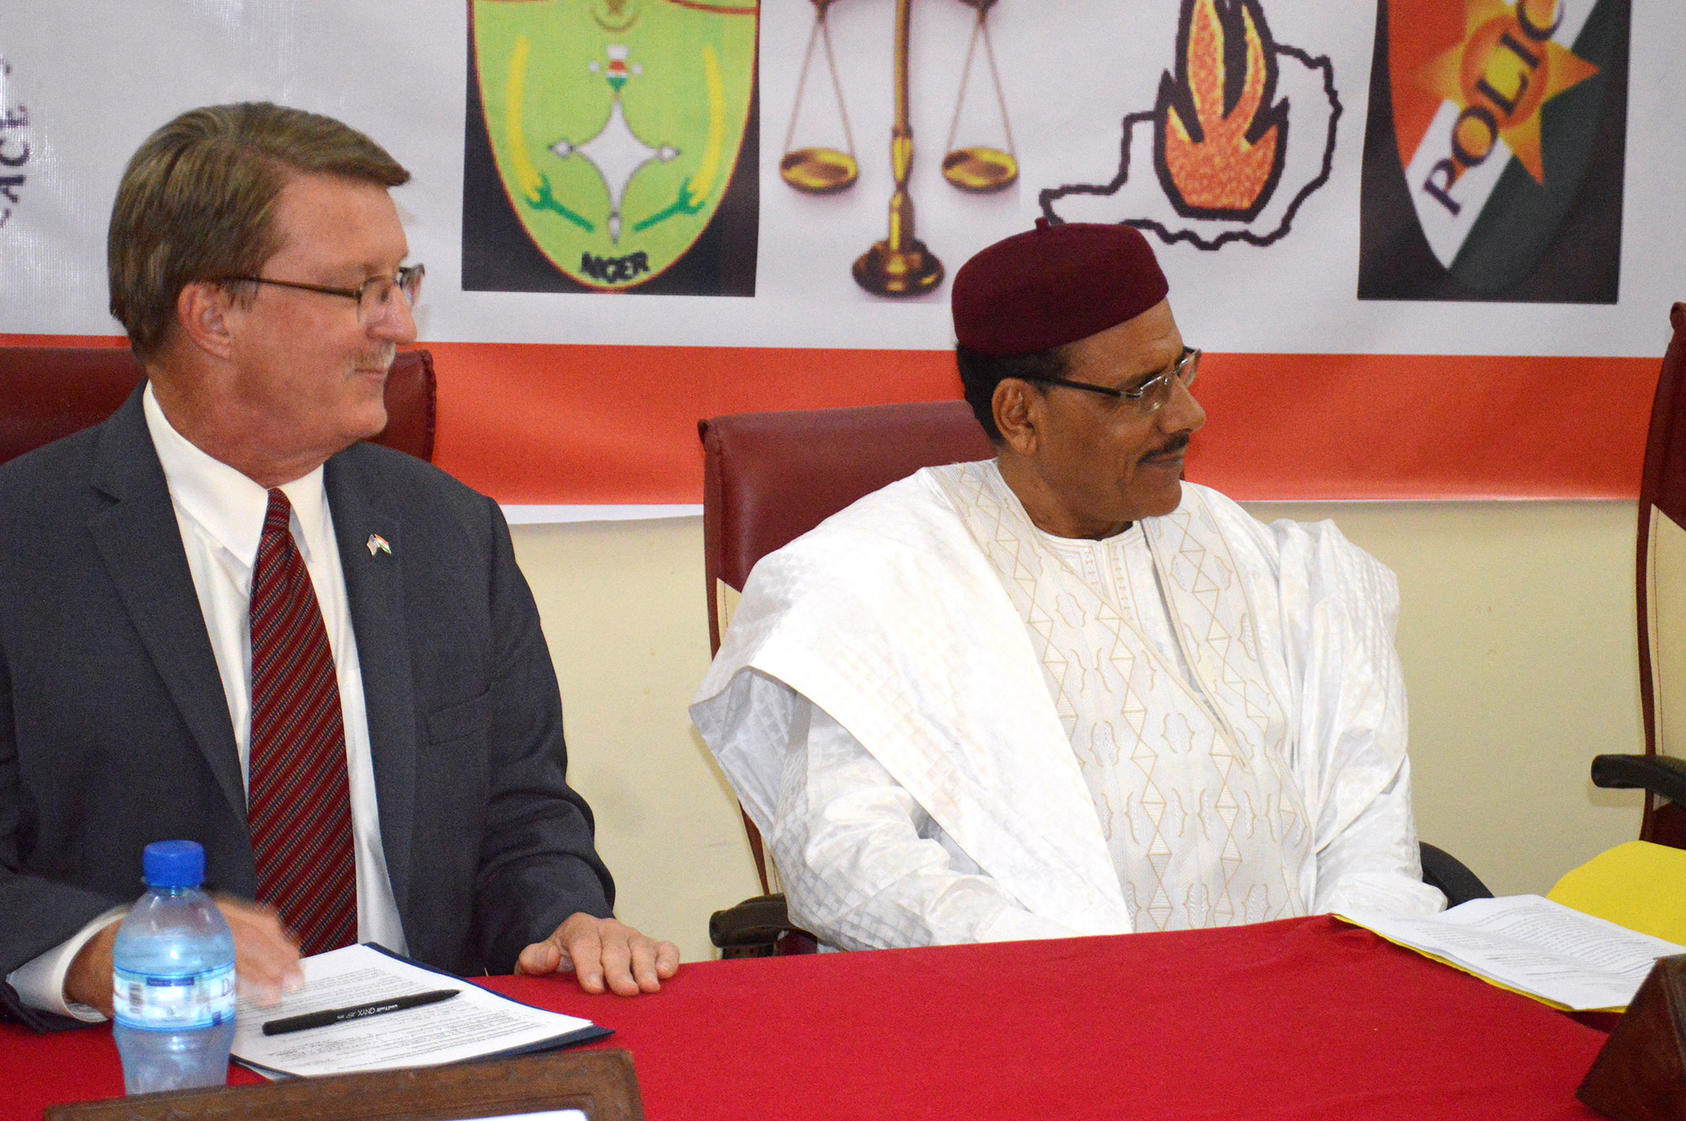 L’ambassadeur des Etats-Unis, Eric Whitaker, et le ministre de l’intérieur du Niger, Mohamed Bazoum, ont présenté à l’évènement organisé conjointement avec l’USIP en aout 2018, pour élaborer une stratégie de sécurité collaborative pour le Niger.